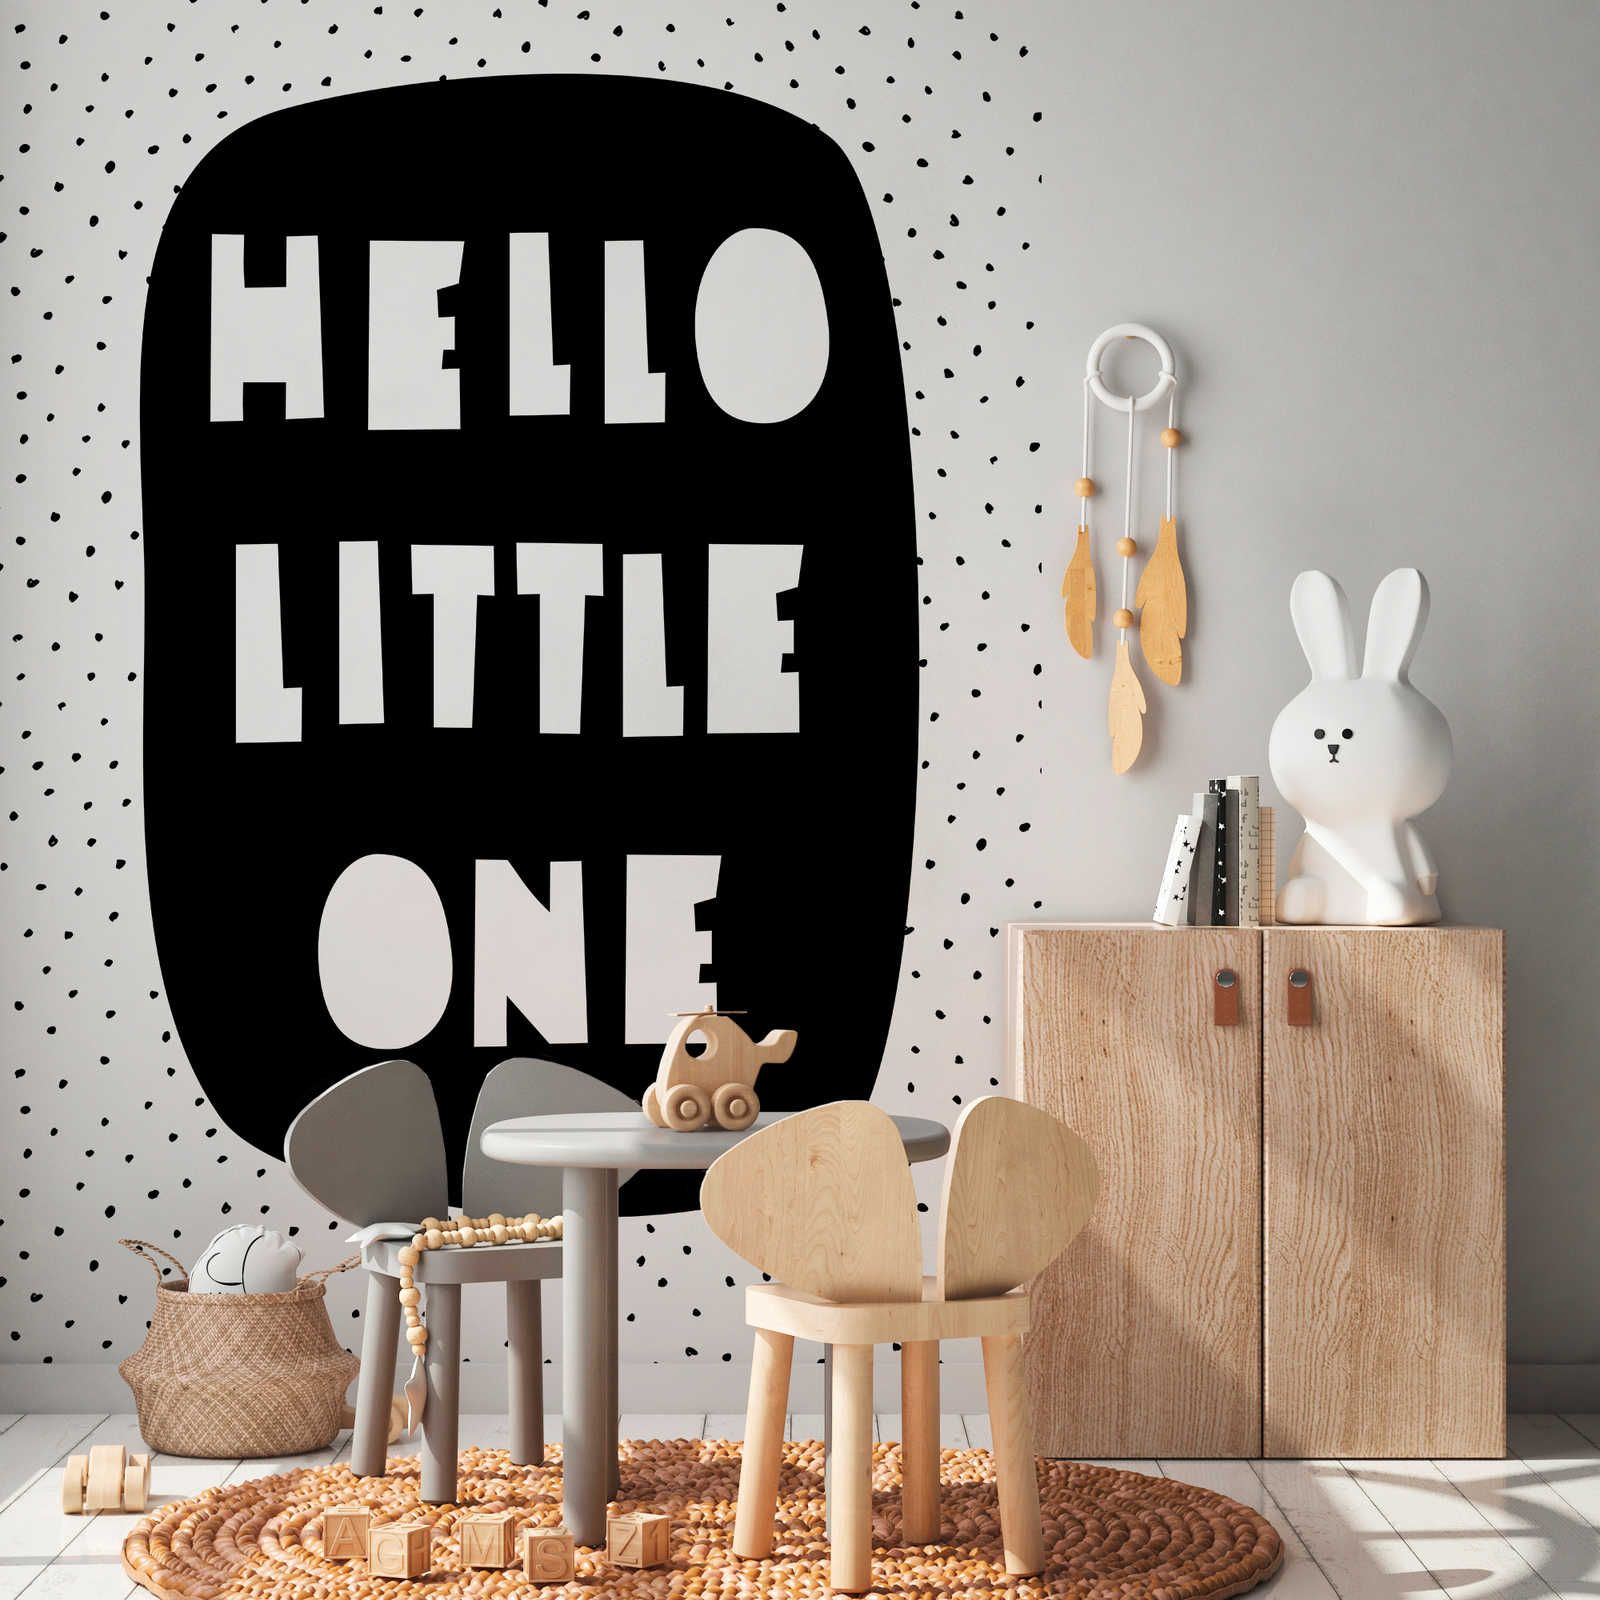 Digital behang voor de kinderkamer met "Hello Little One" opschrift - Glad & parelmoer fleece
